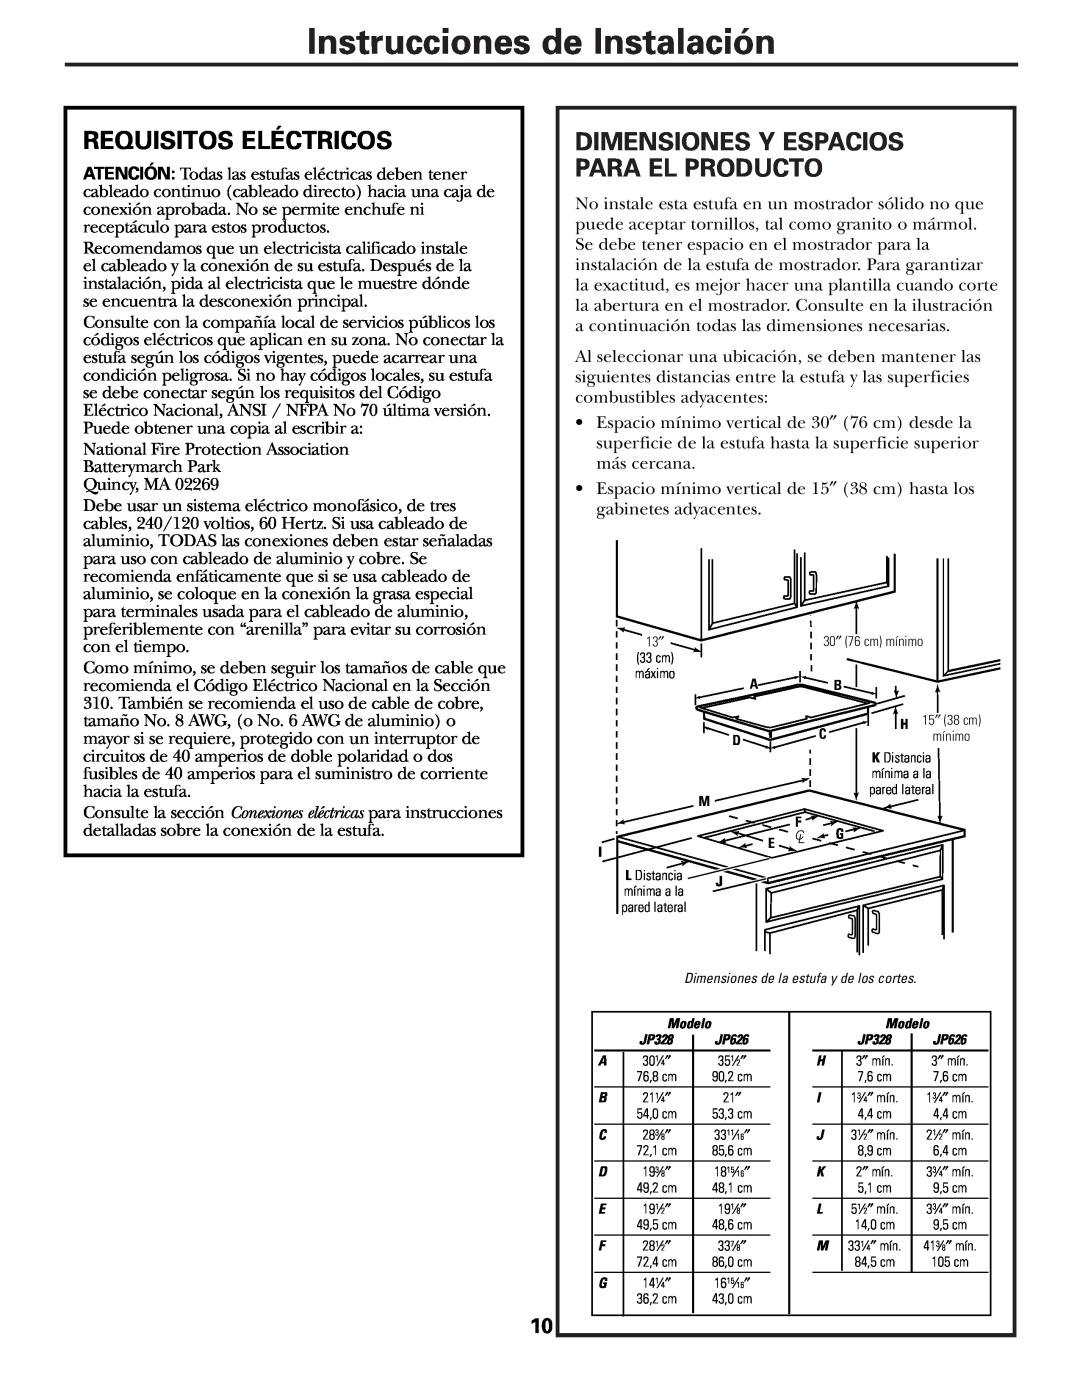 GE JP328 JP626 owner manual Instrucciones de Instalación, Requisitos Eléctricos, Dimensiones Y Espacios Para El Producto 